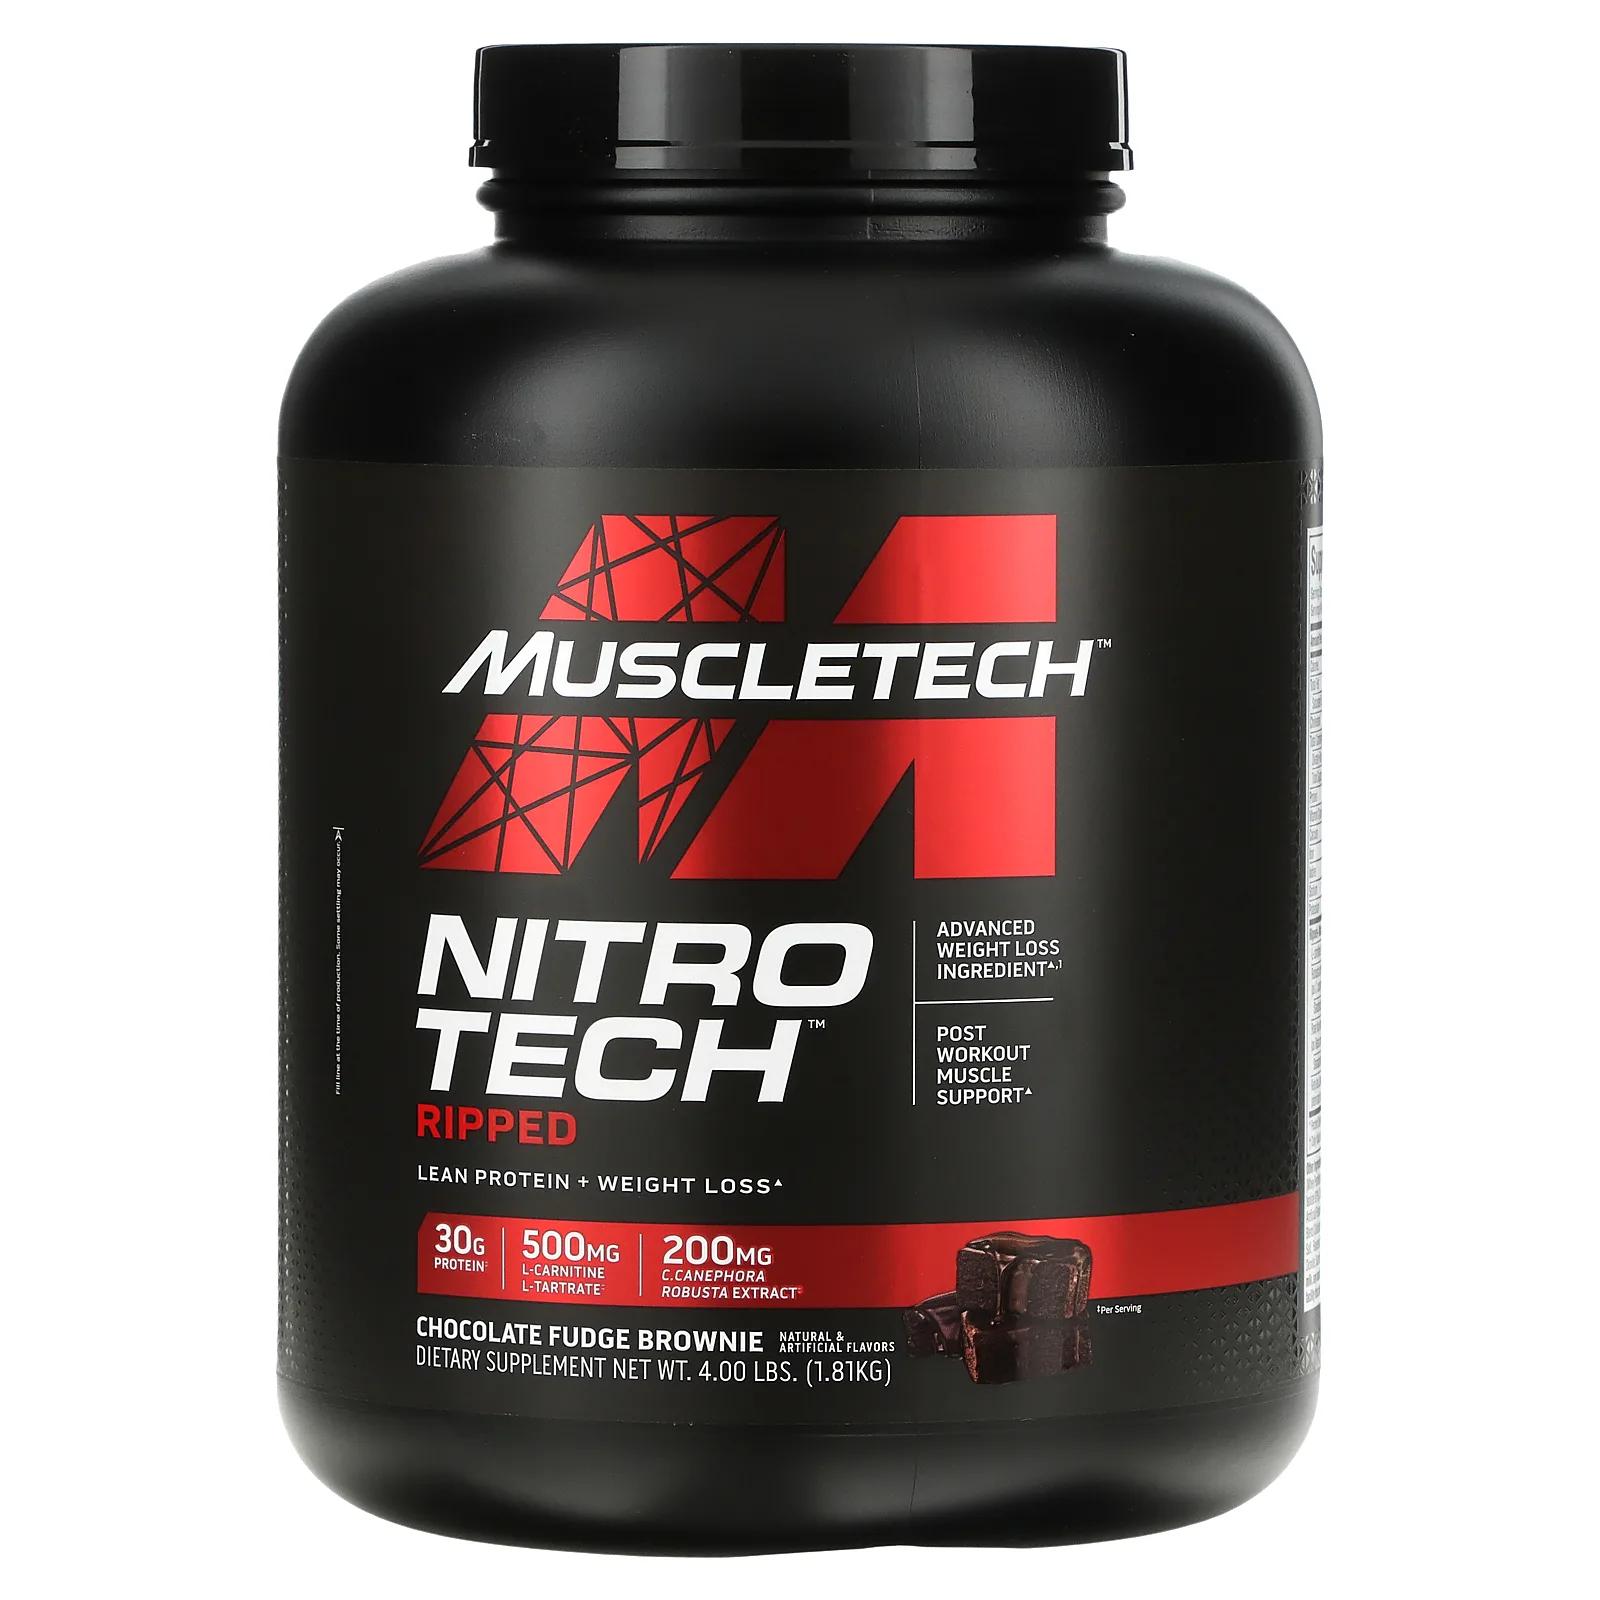 Muscletech Nitro Tech Ripped чистый протеин + состав для похудения со вкусом брауни с шоколадной помадкой 1,81 кг (4 фунта)